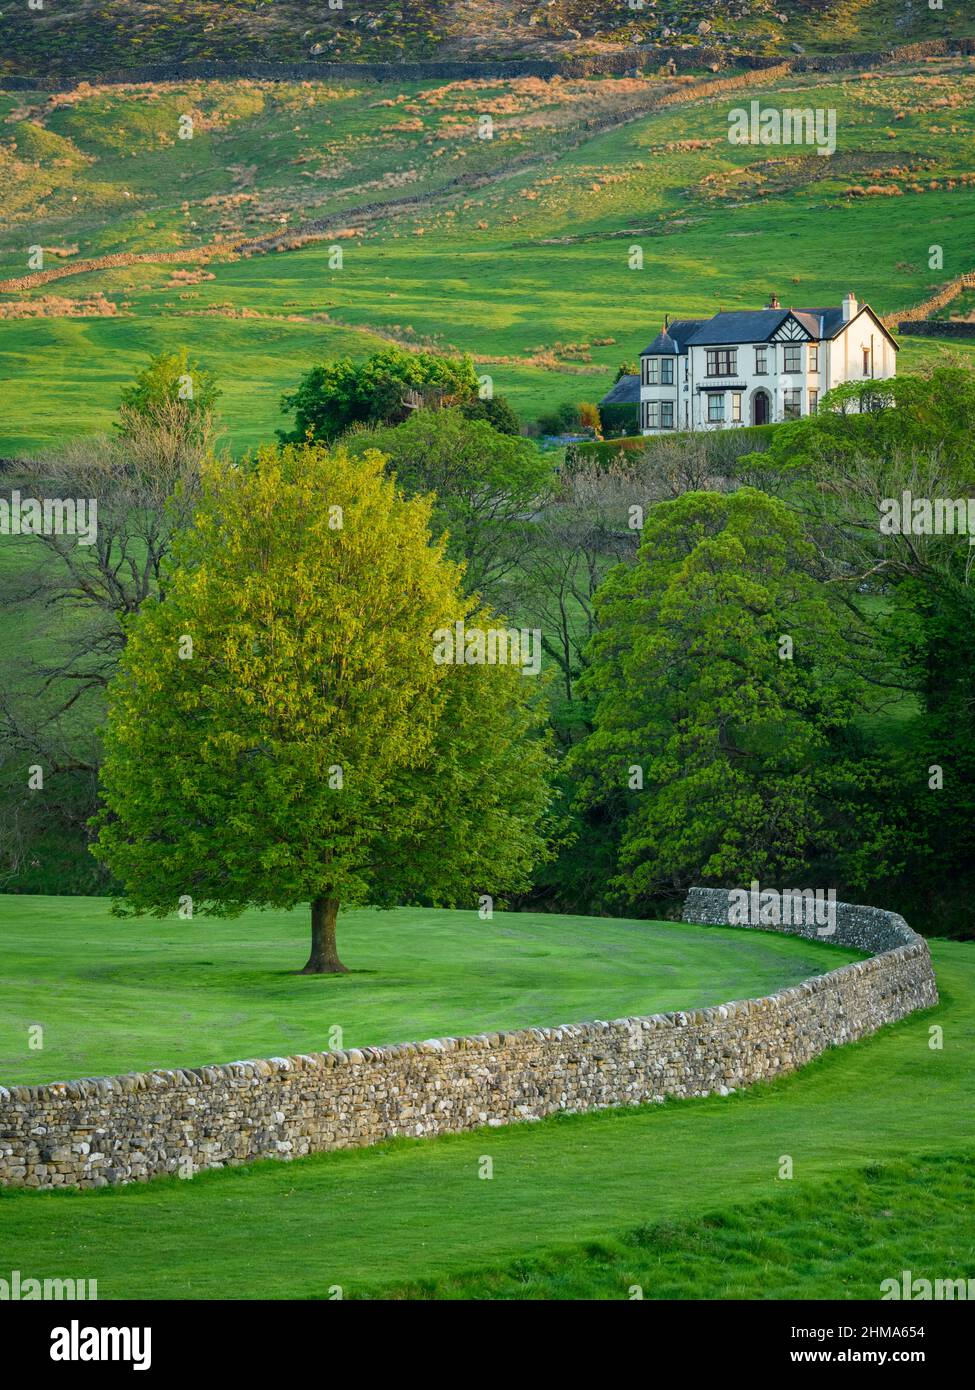 Pintoresco paisaje rural Wharfedale (gran casa, laderas del valle, pared de piedra seca curviente, pastos y campos de tierras de labranza verdes) - Yorkshire Dales, Inglaterra Reino Unido. Foto de stock